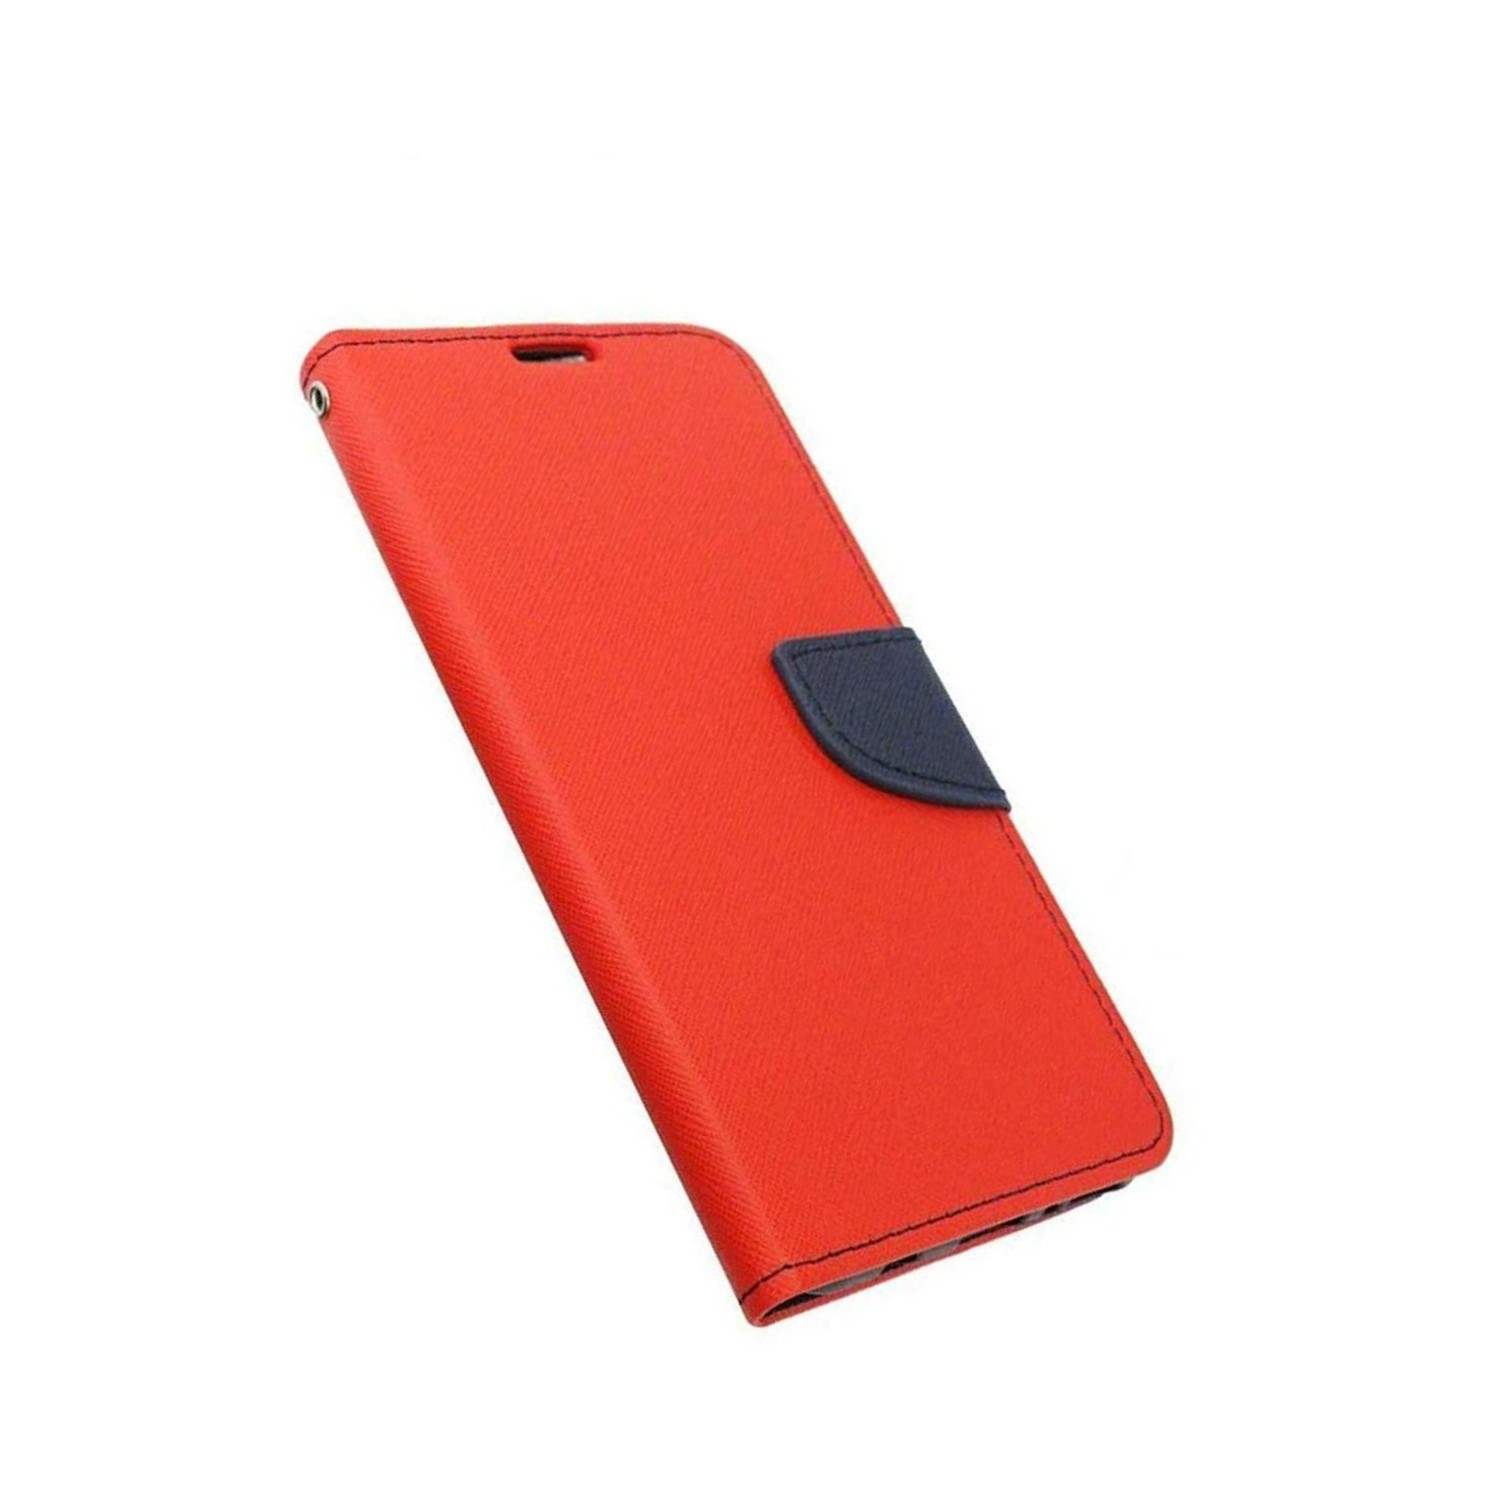 Schutzglas, Rot-Blau COFI Tasche iPhone + 13 Apple, 9H Buch Bookcover, Pro,